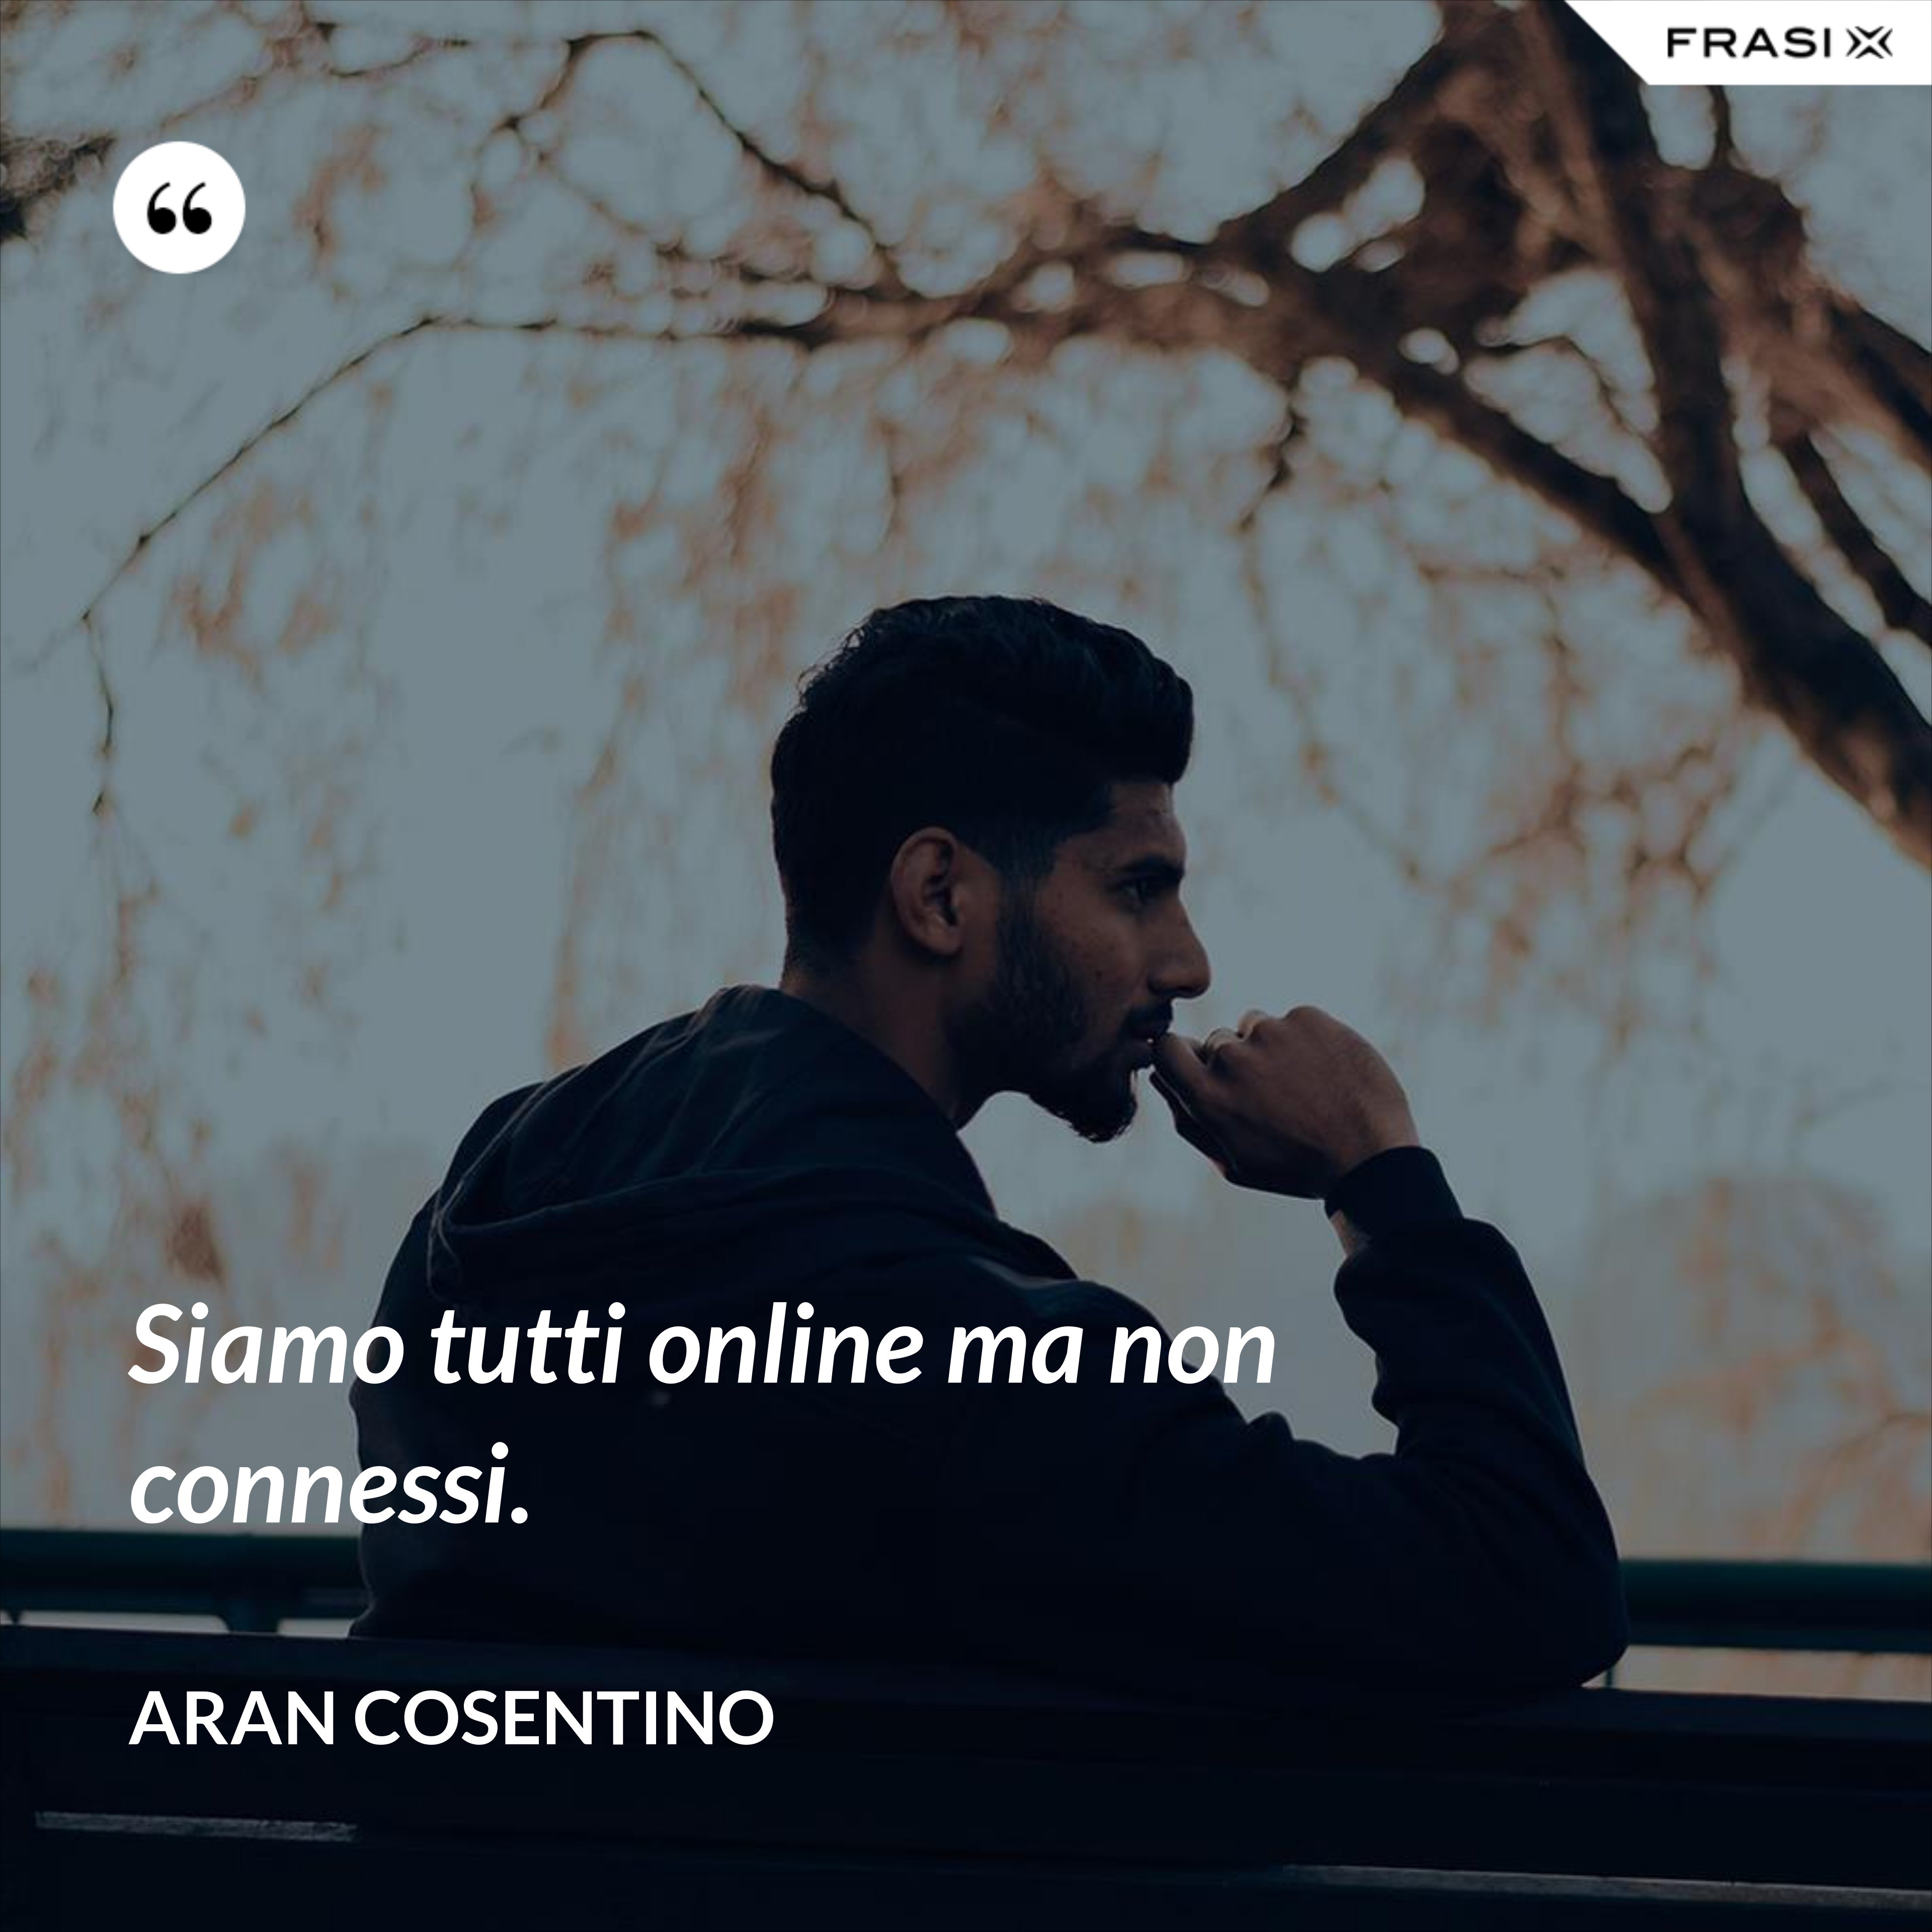 Siamo tutti online ma non connessi. - Aran Cosentino